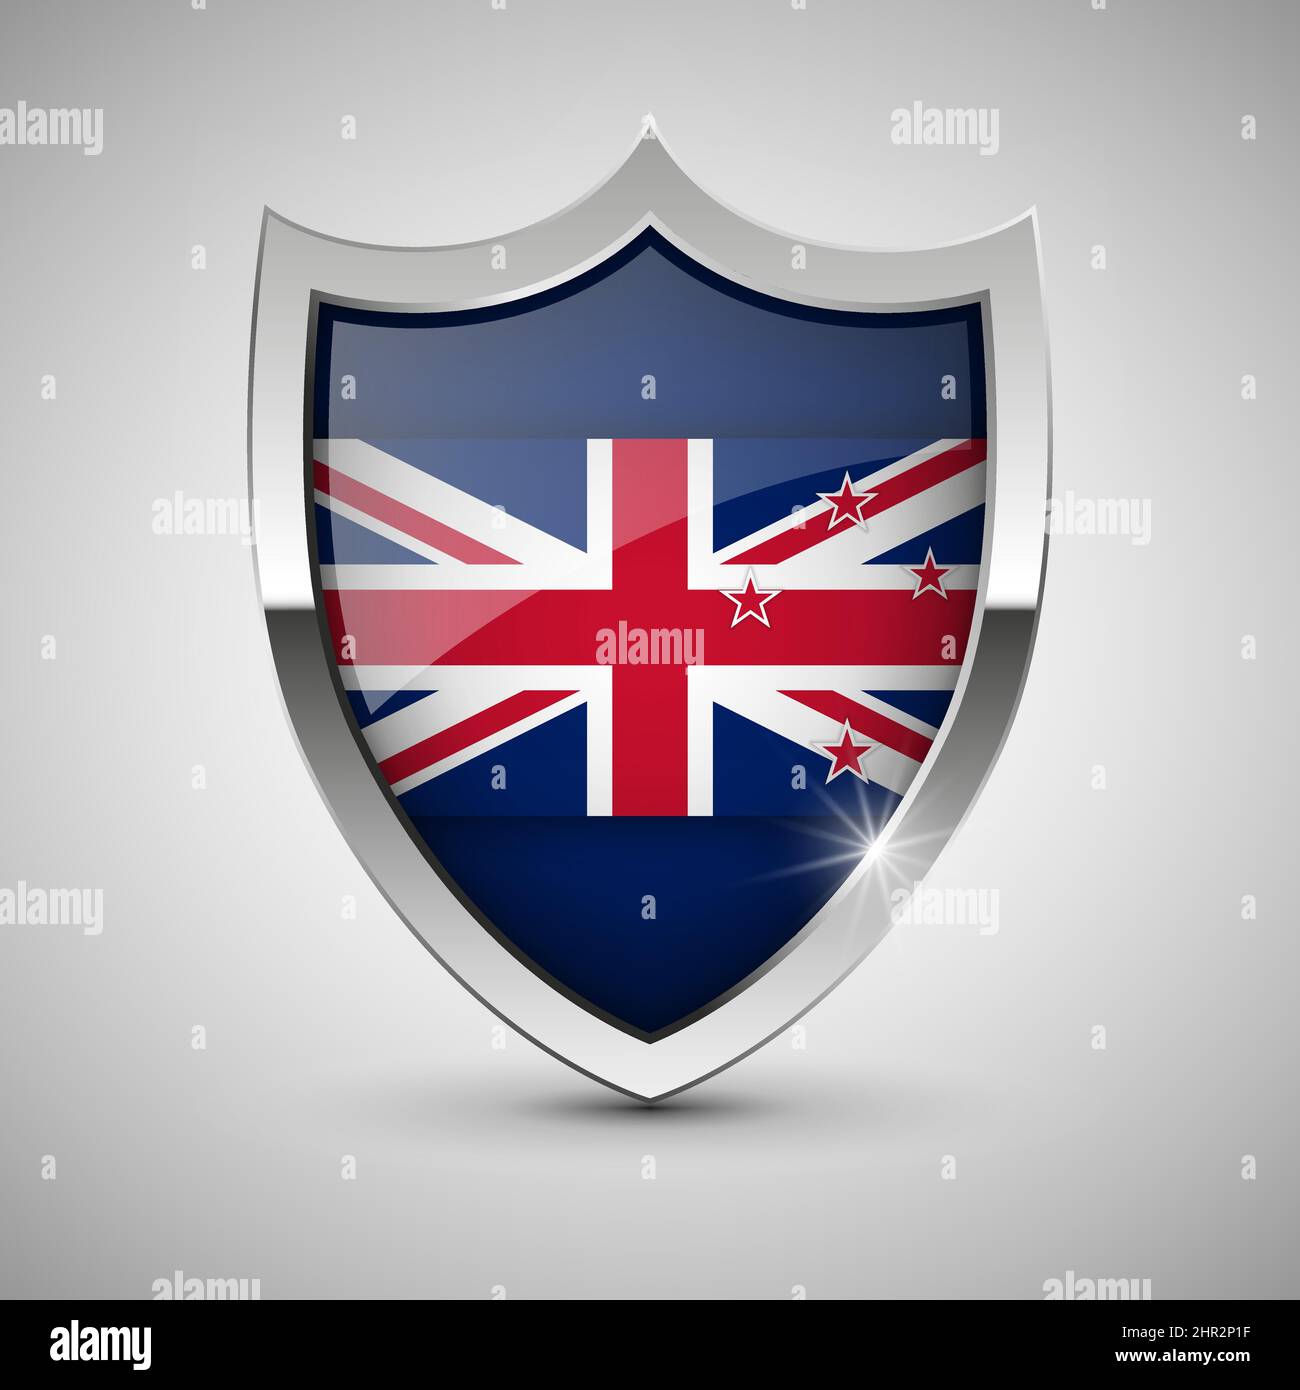 EPS10 Vektor Patriotisches Schild mit Flagge von Newzealand. Ein Element der Wirkung für die Verwendung, die Sie daraus machen möchten. Stock Vektor